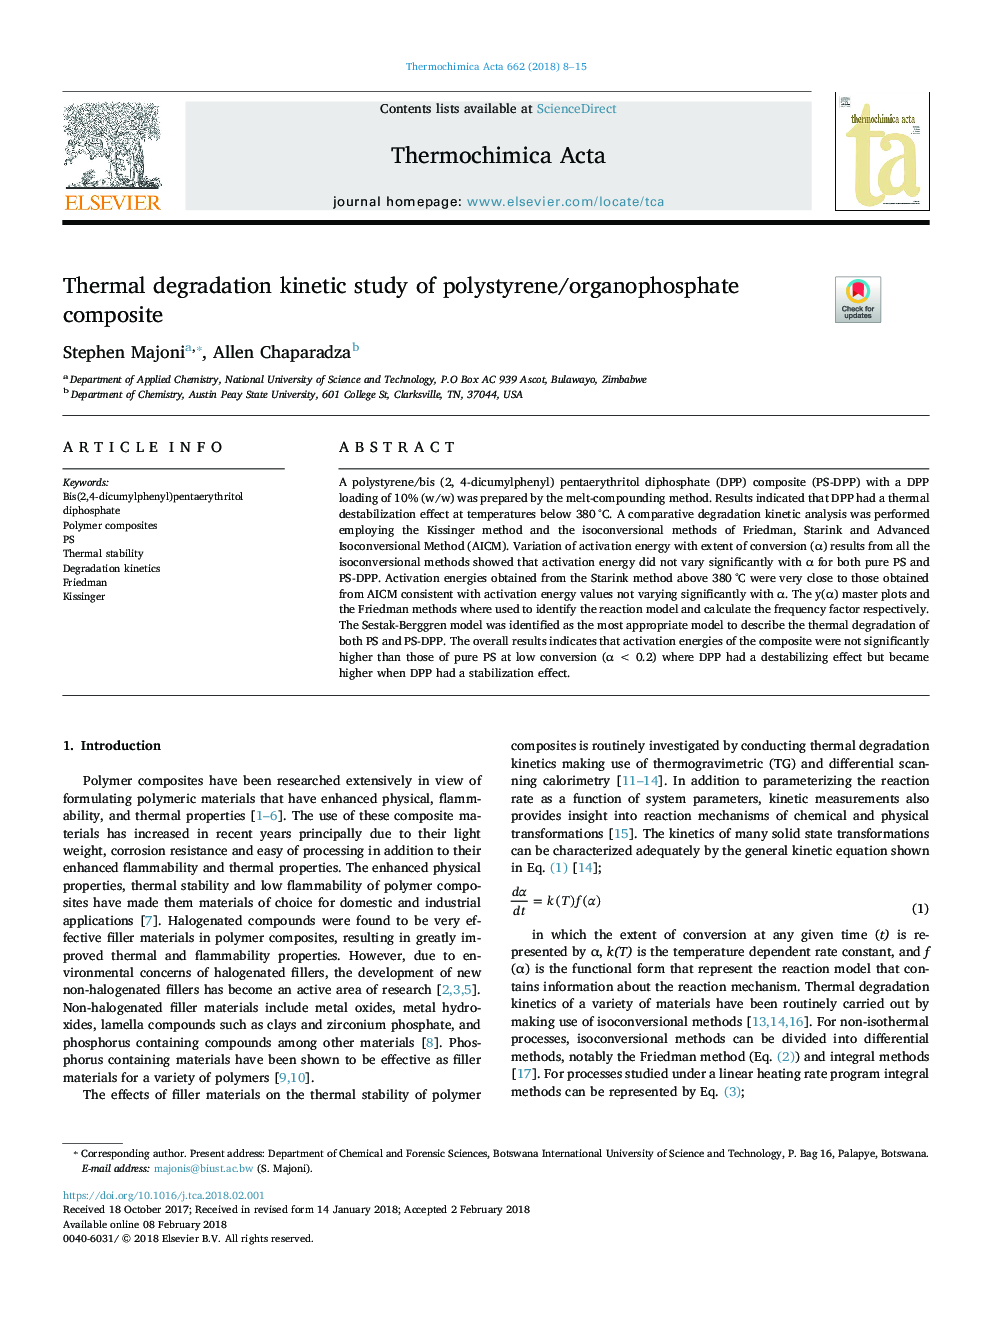 مطالعه جنبشی ترمودرانی کامپوزیت پلی استایرن / ارگانوفسفره 